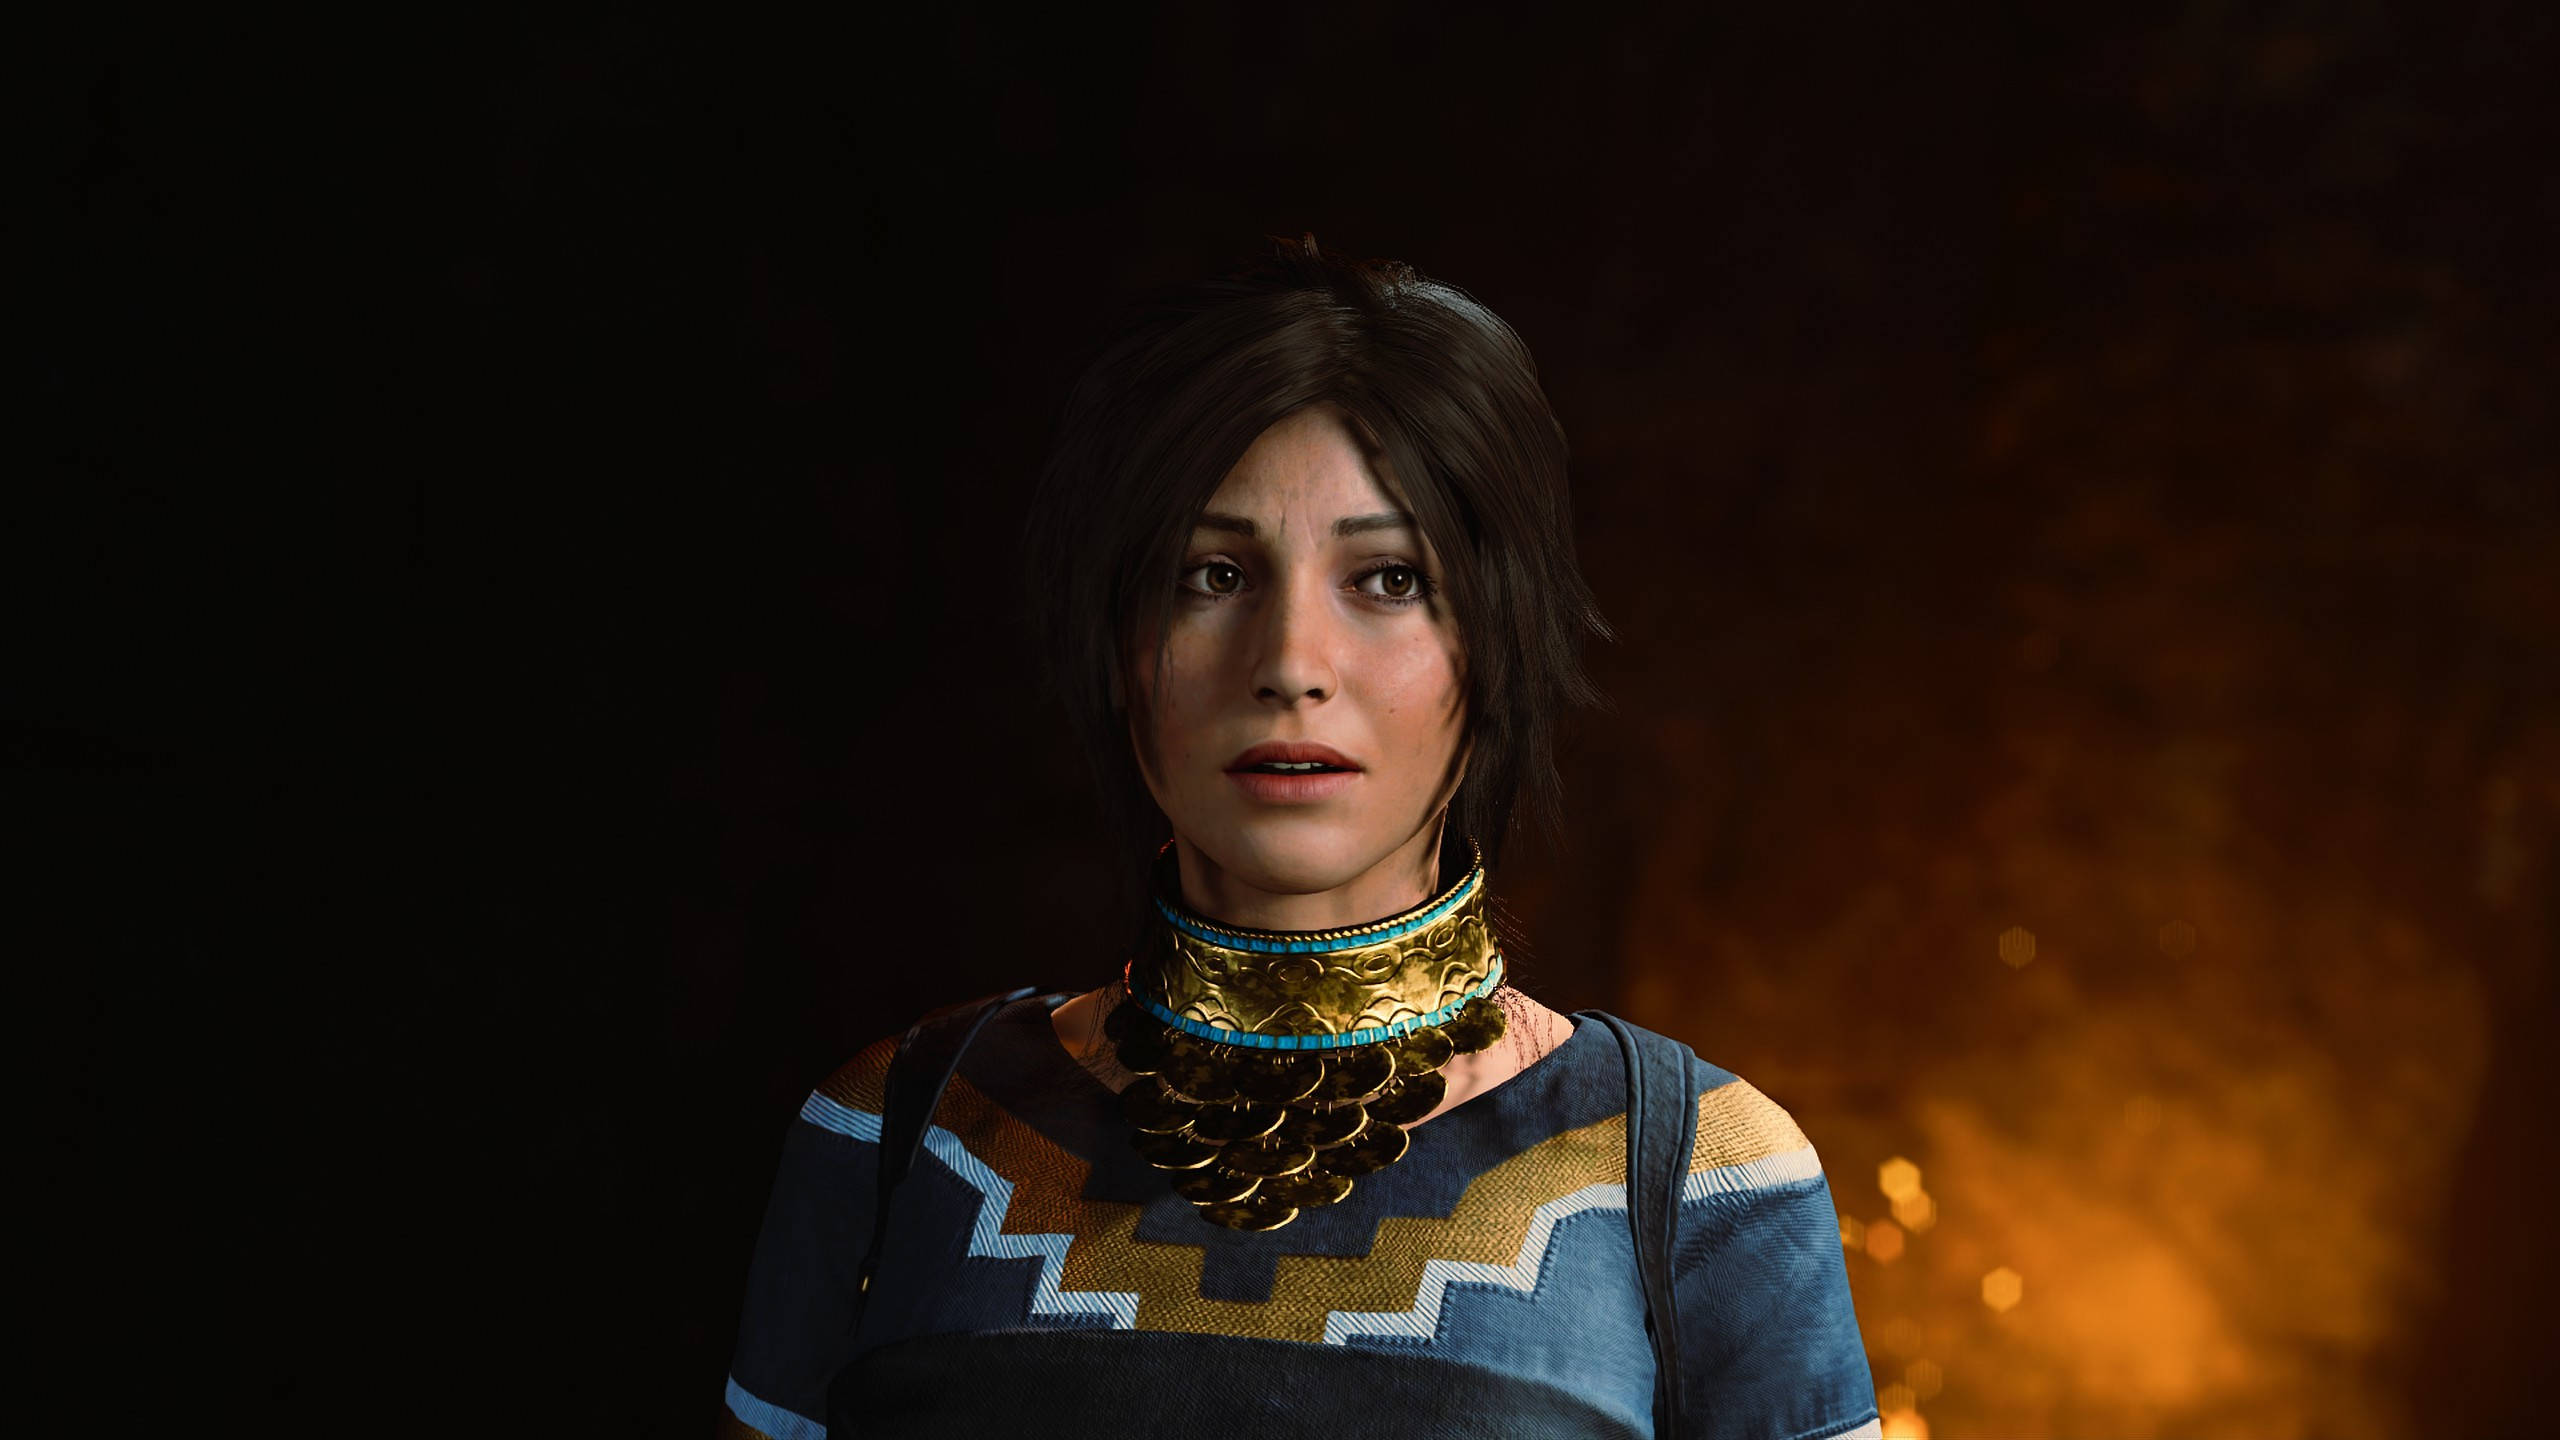 Beautiful Lara Croft 2560 X 1440 Tomb Raider